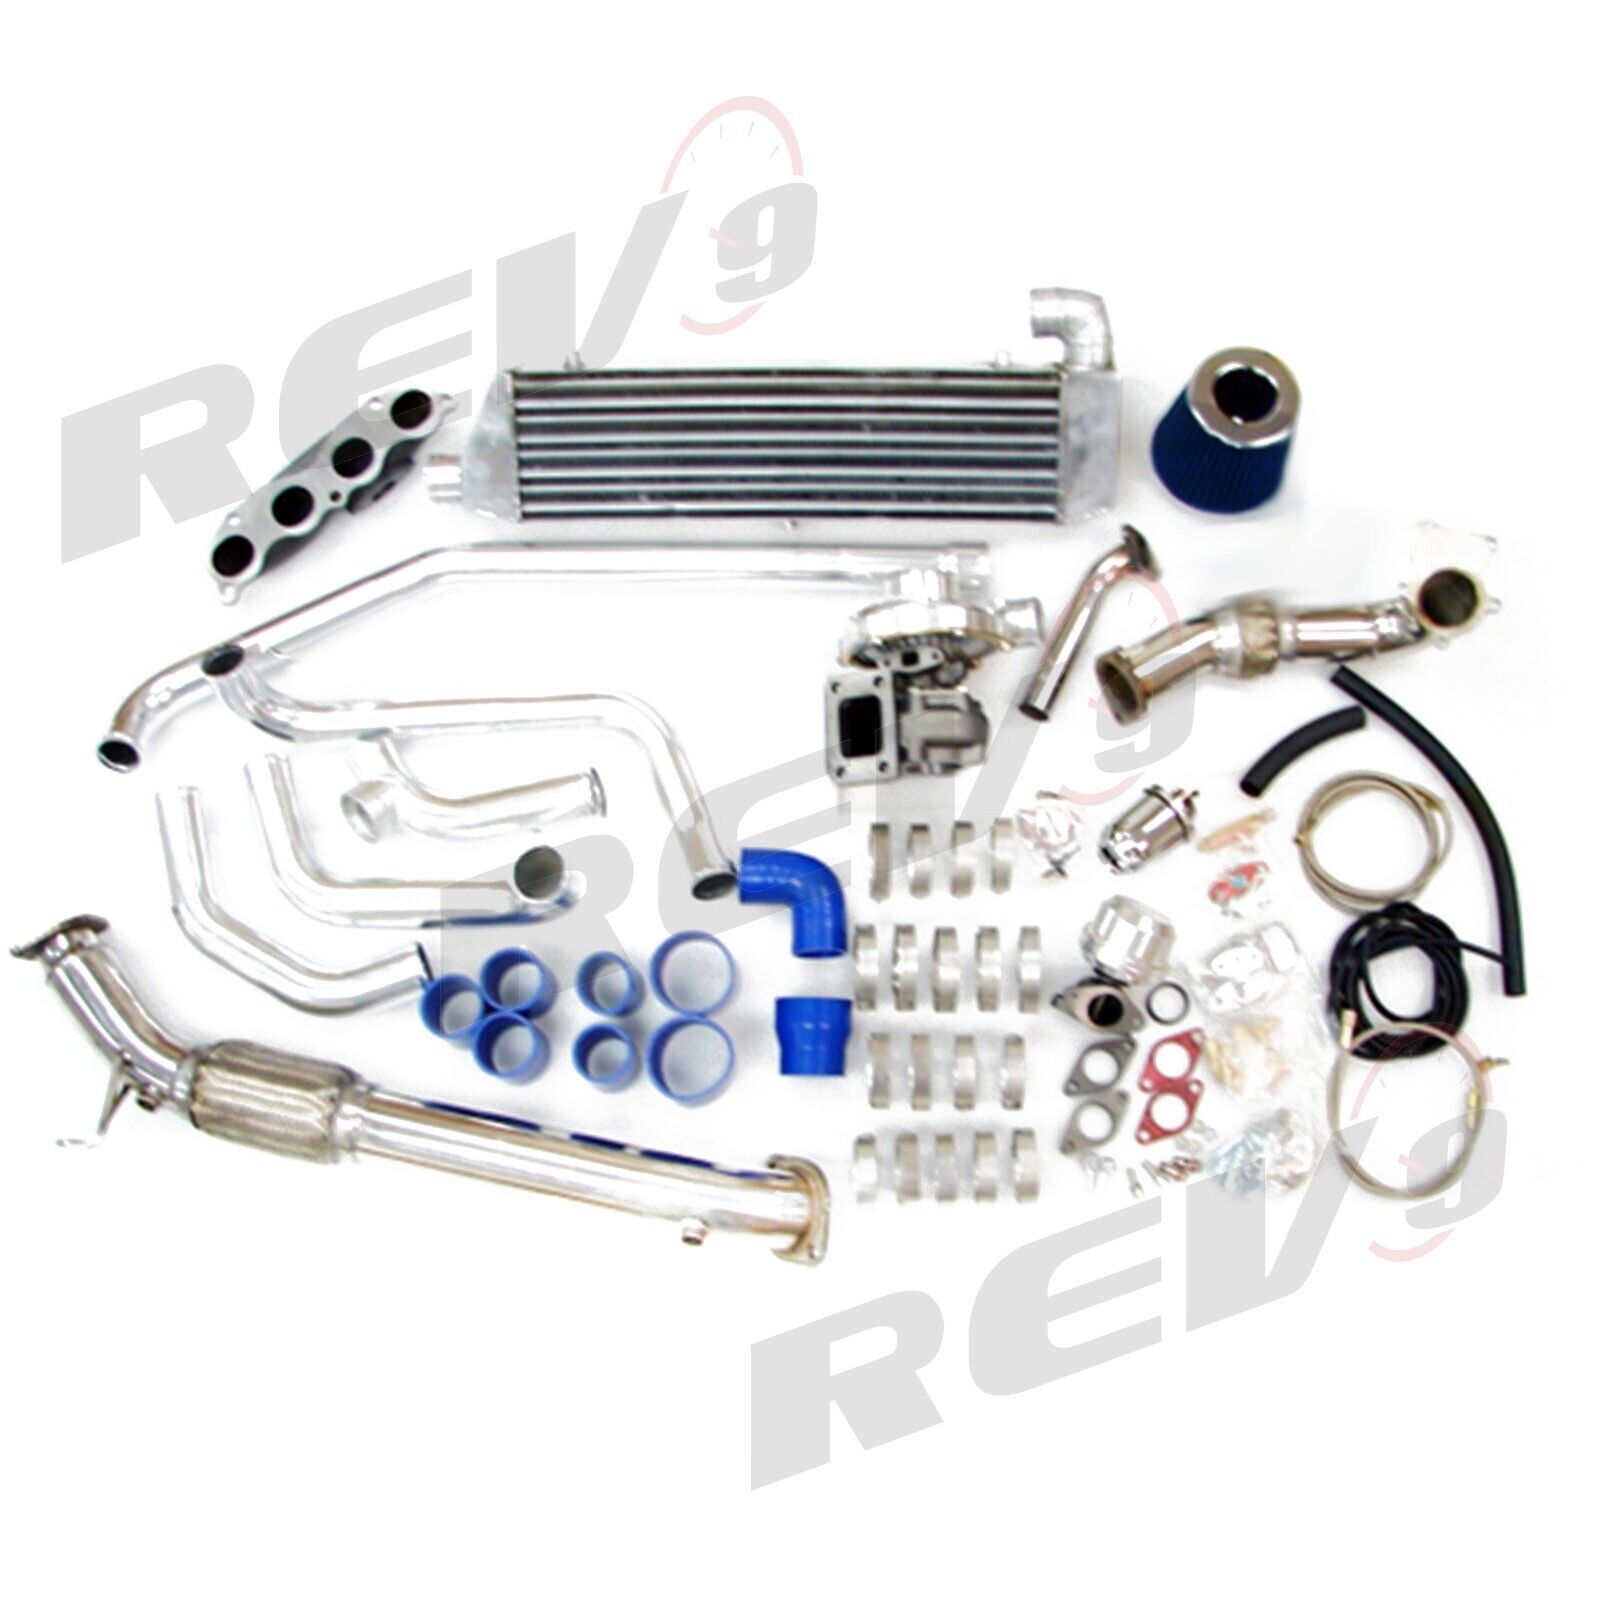 Rev9 T3 T3T4 Turbo TurboCharger Complete Starter Kit Bolt-On For Acura RSX K20